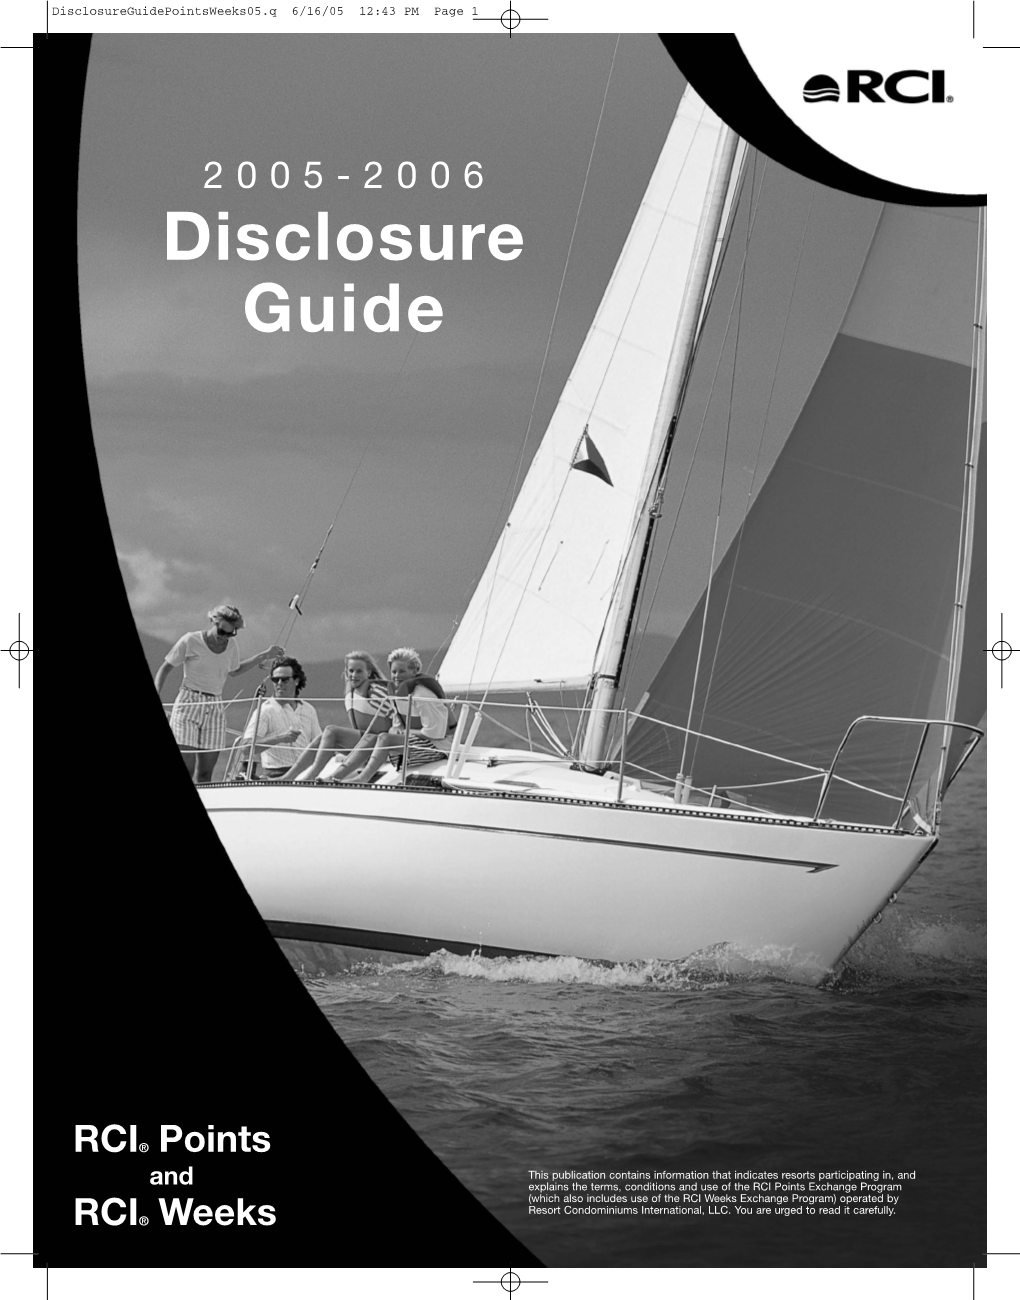 Disclosure Guide